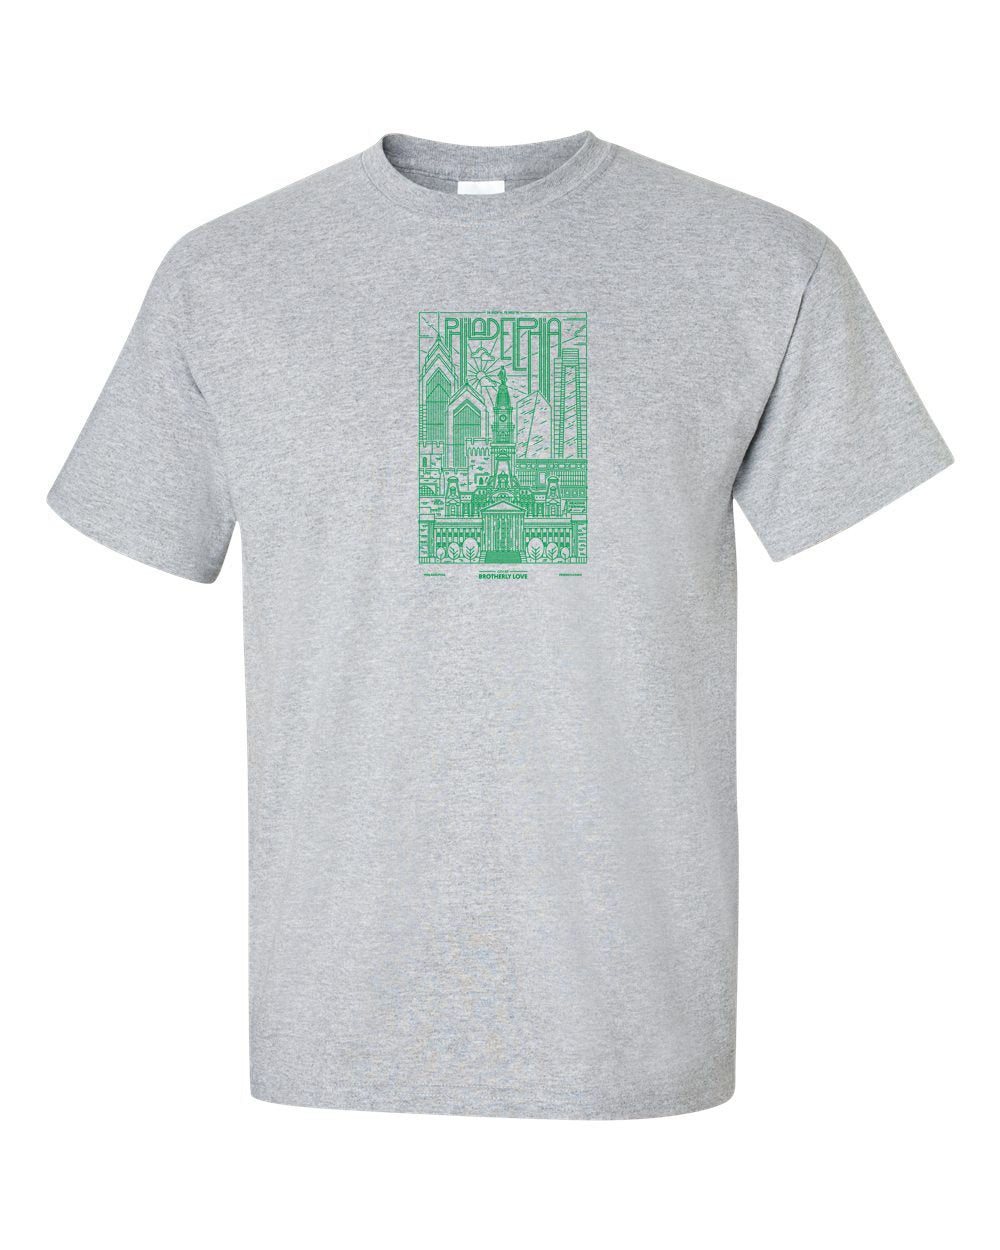 Philadelphia Skyline V2 (Green Ink) Mens/Unisex T-Shirt